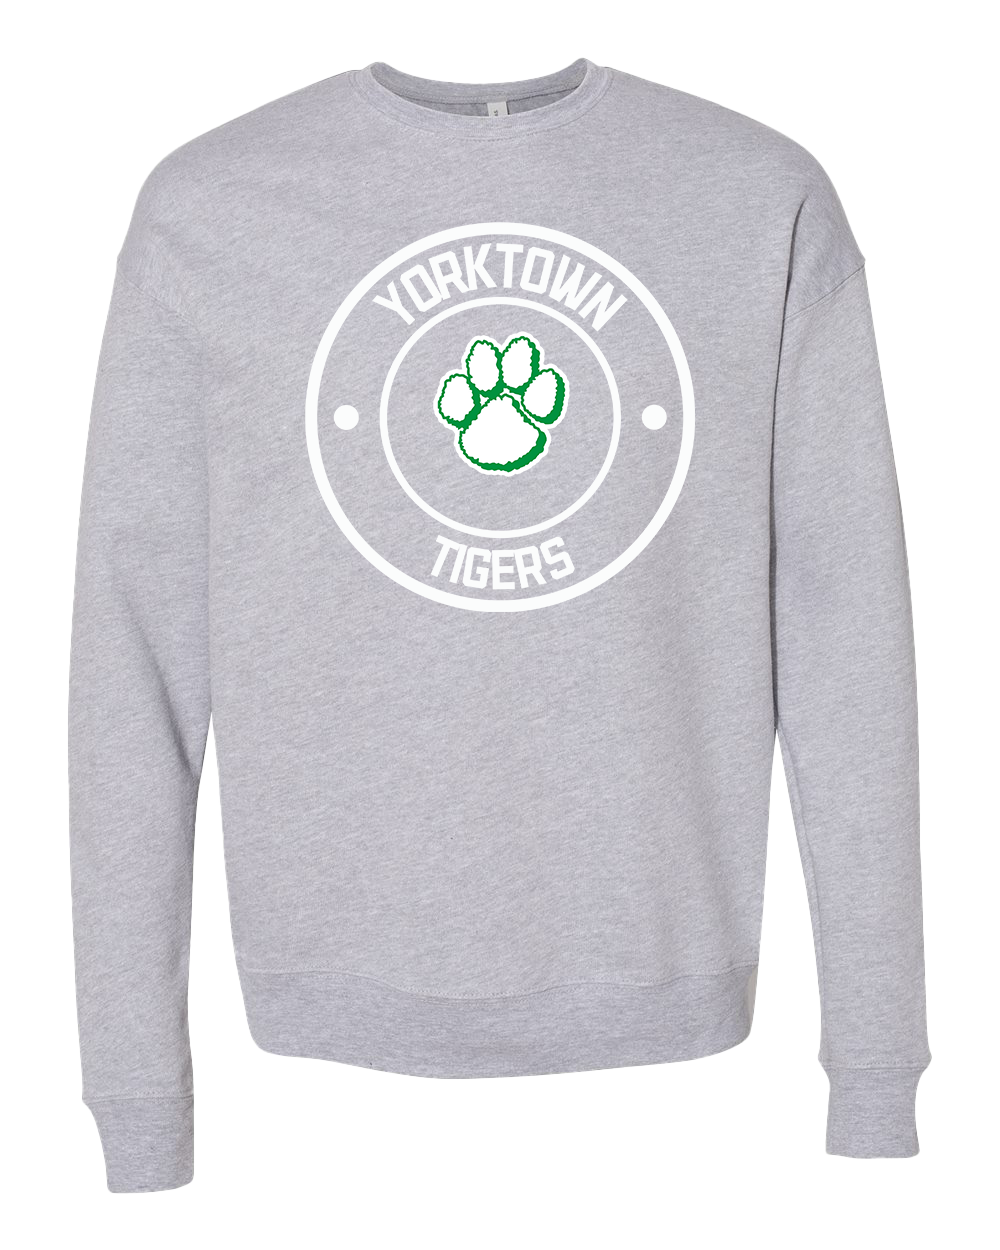 Yorktown Tigers Round Logo Crew Sweatshirt - Athletic Heather